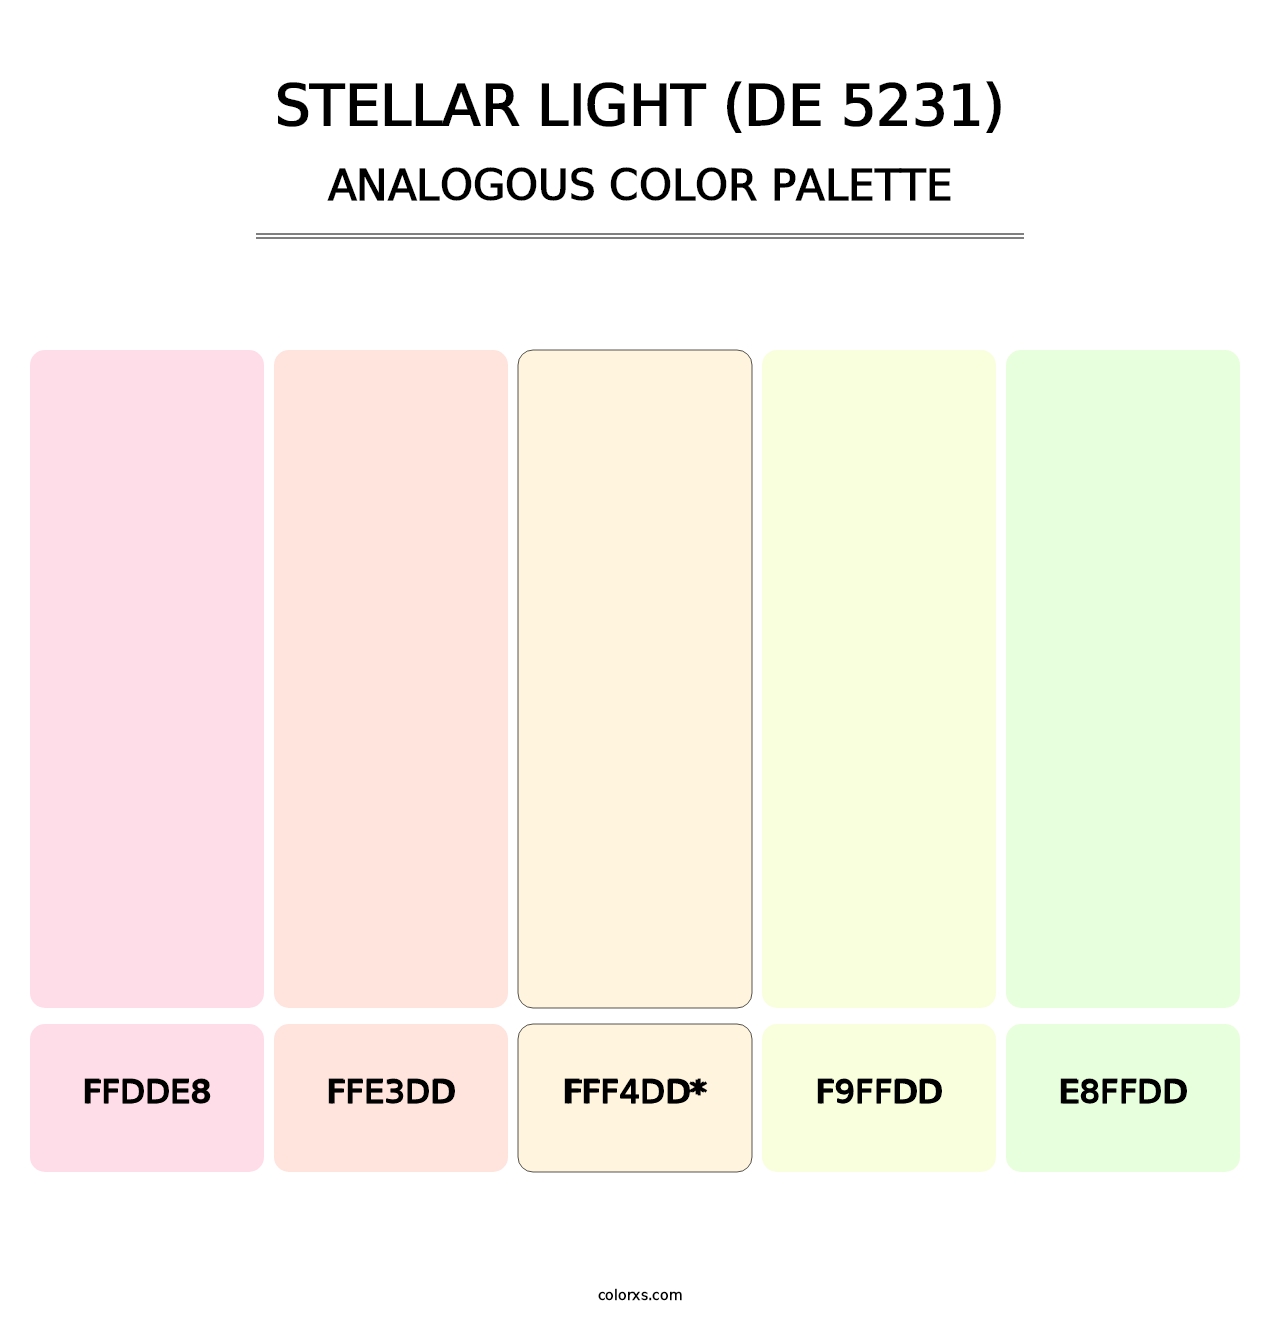 Stellar Light (DE 5231) - Analogous Color Palette